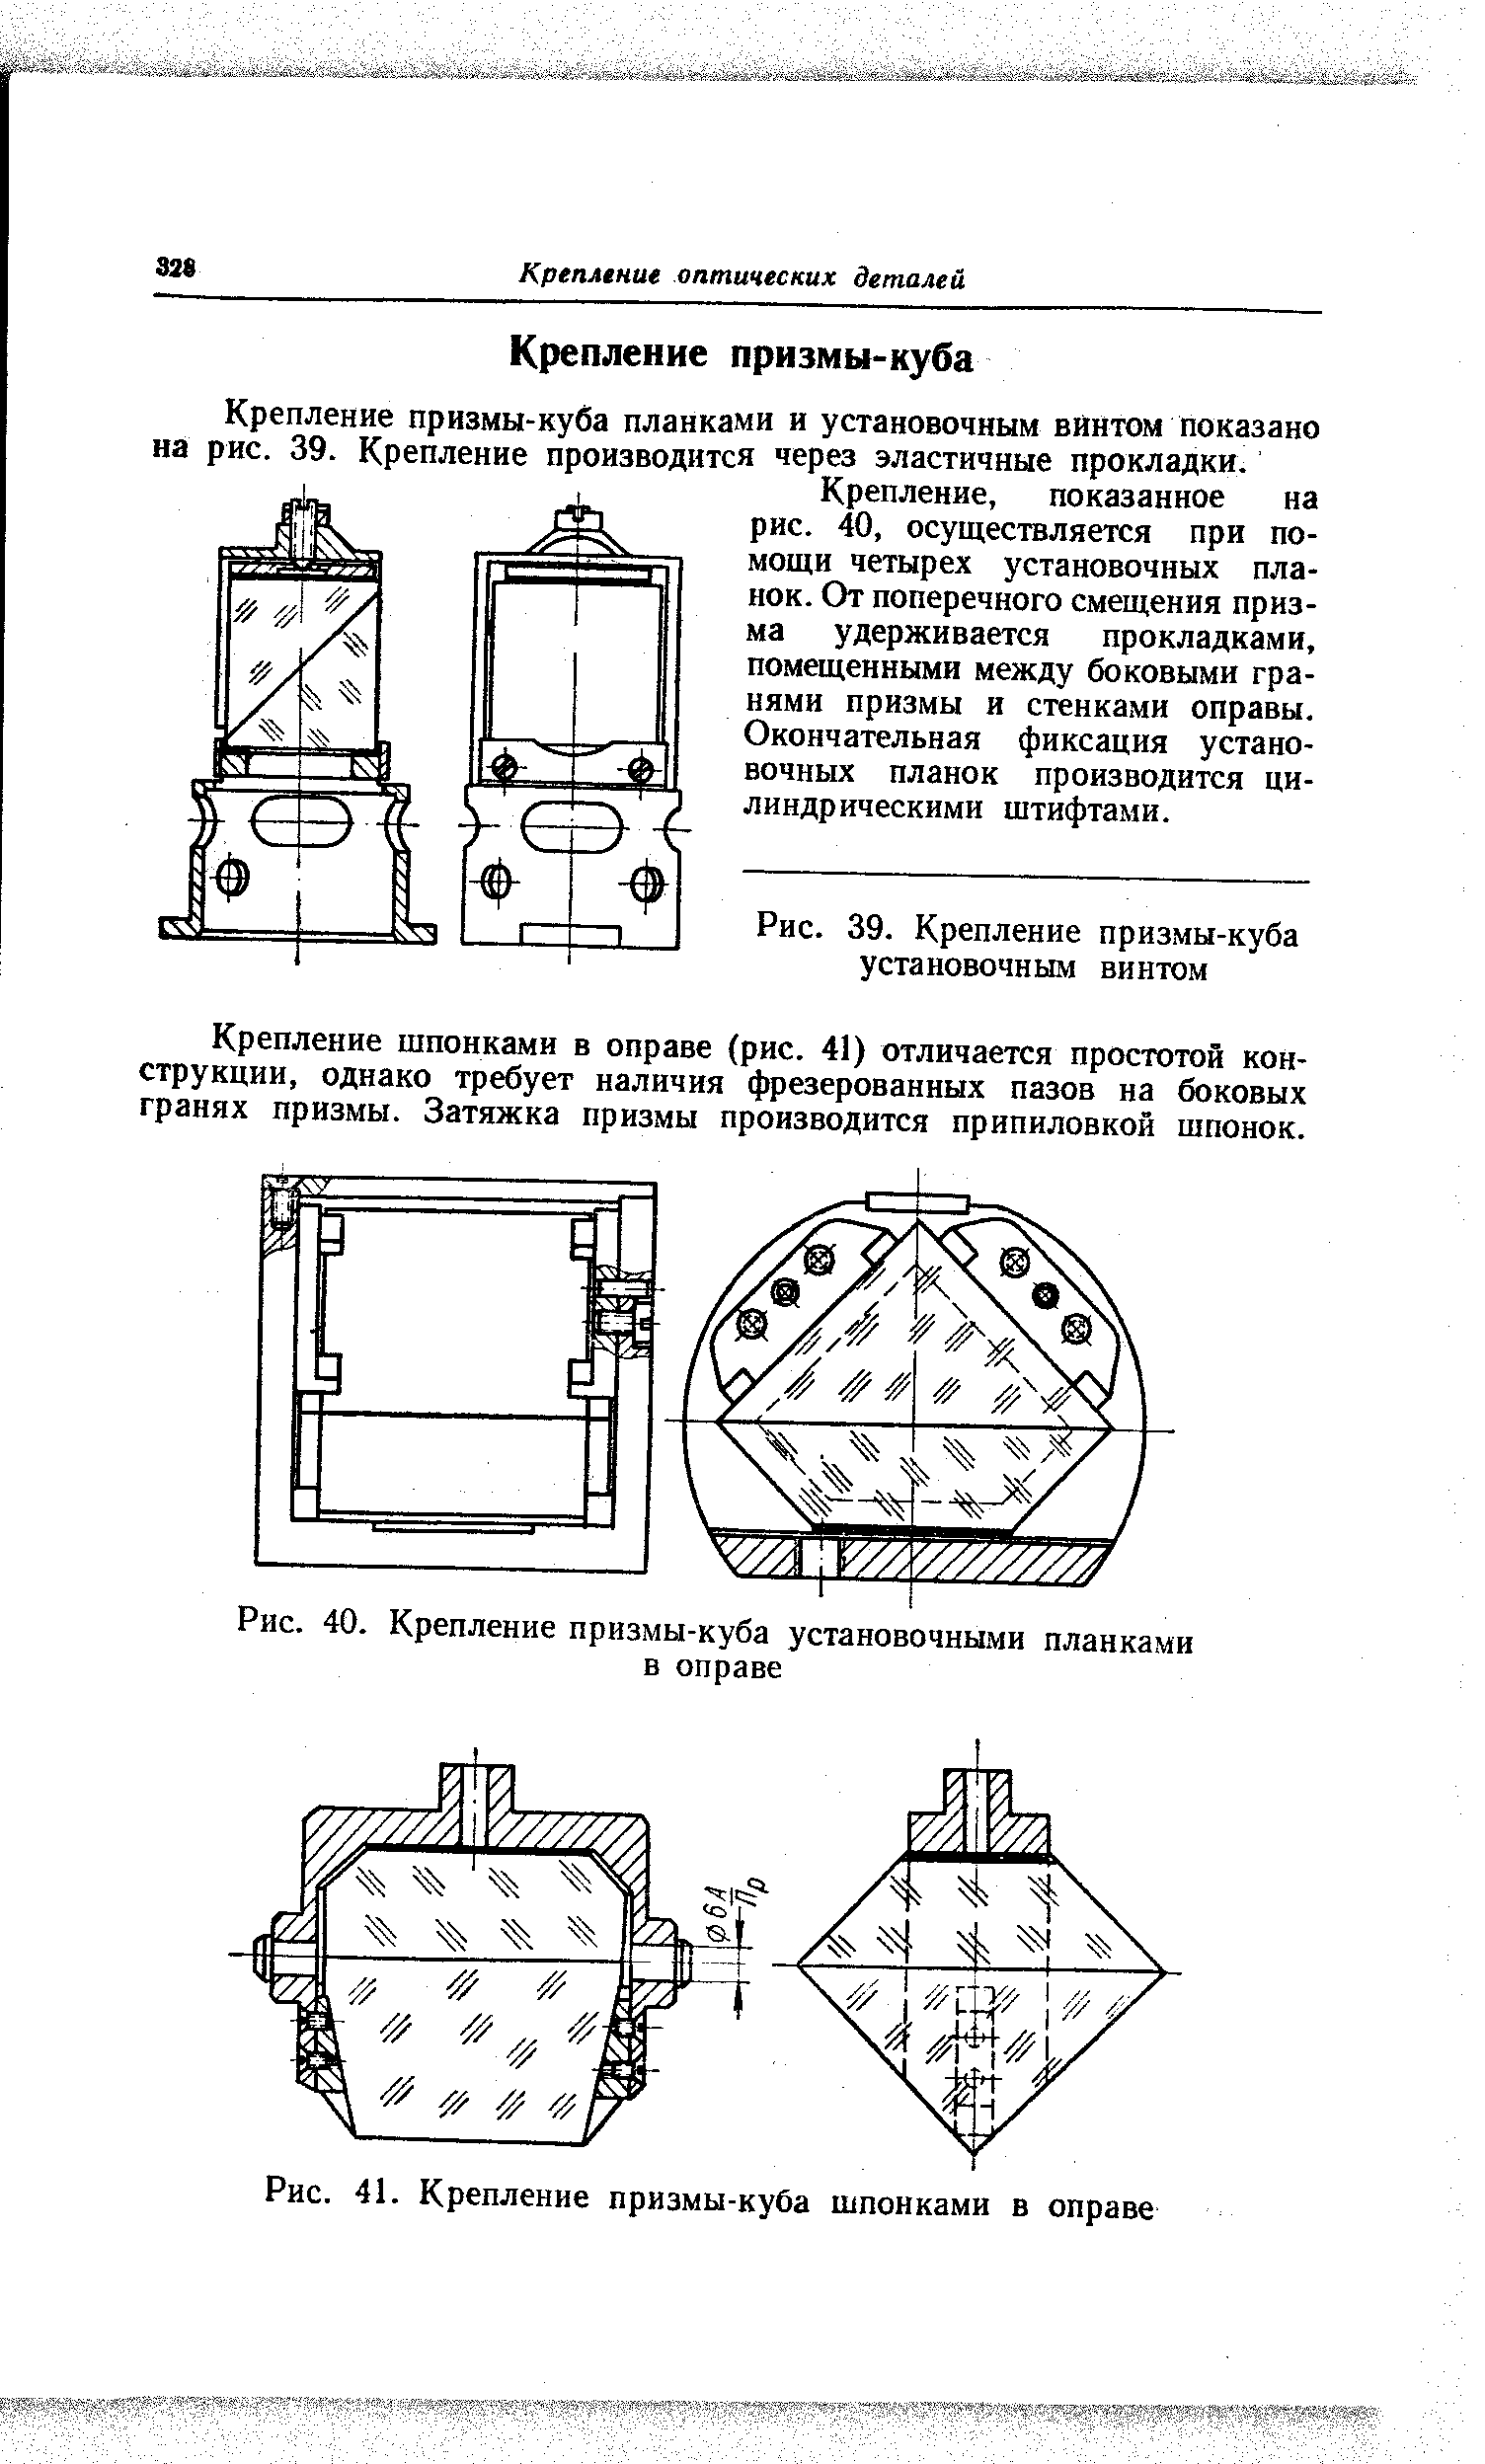 Крепление призмы-куба планками и установочным вйнтом показано на рис. 39. Крепление производится через эластичные прокладки.
